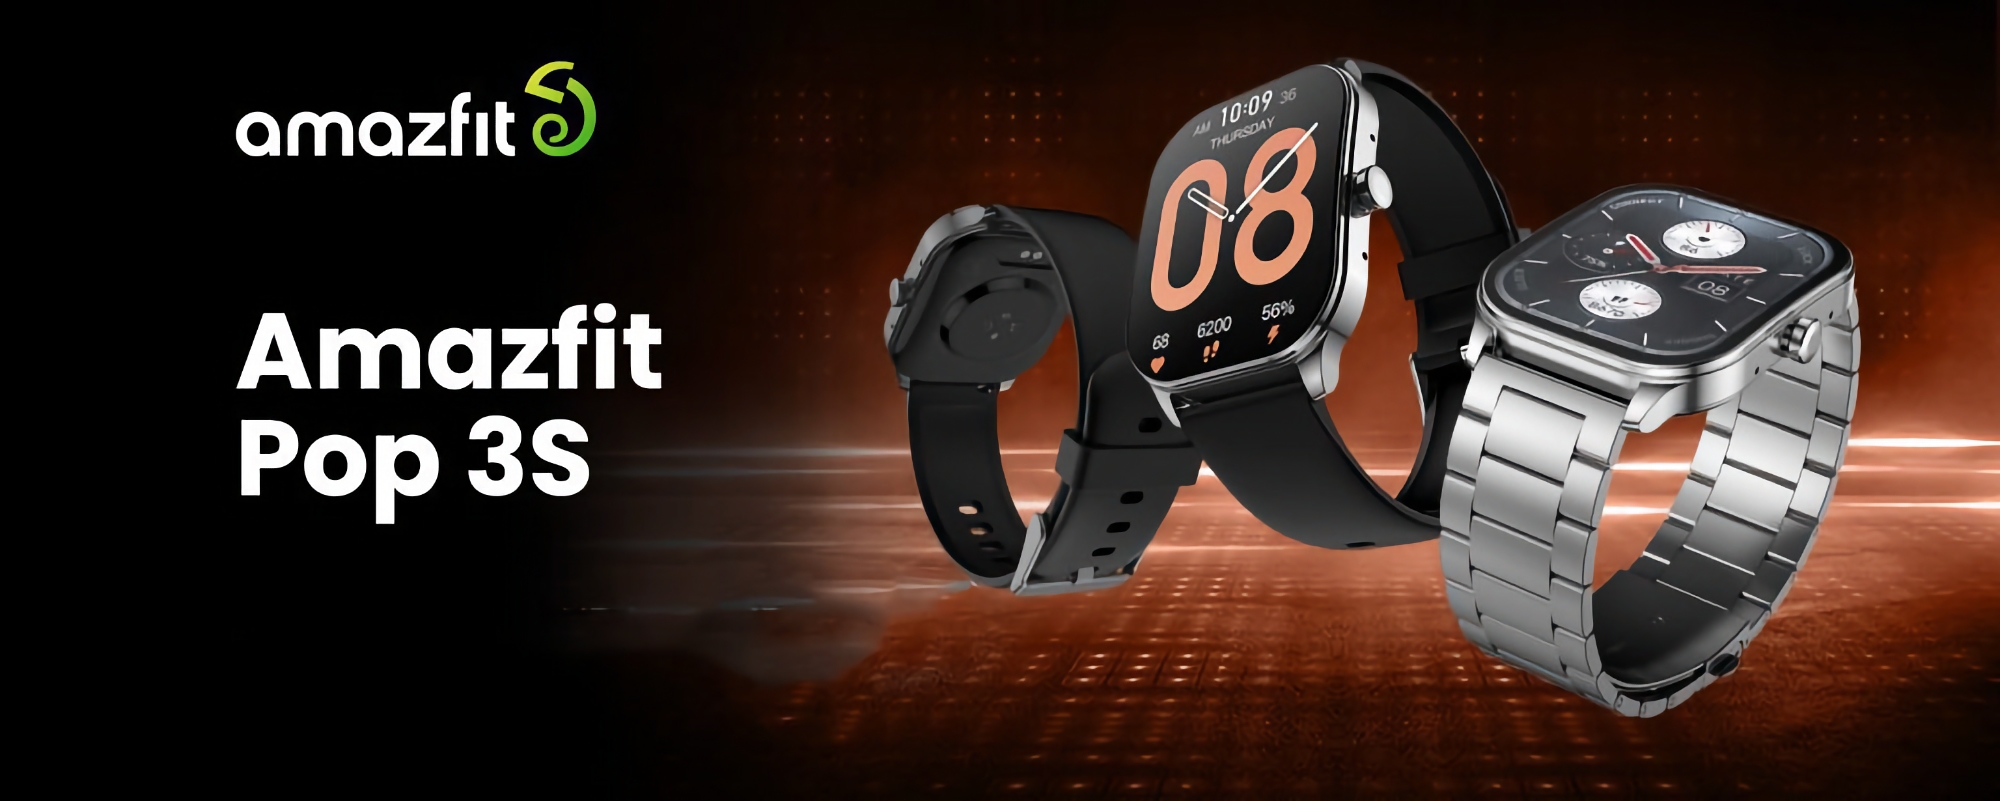 Amazfit lanserar Pop 3S smartwatch med AMOLED-skärm, SpO2-sensor och upp till 12 dagars batteritid